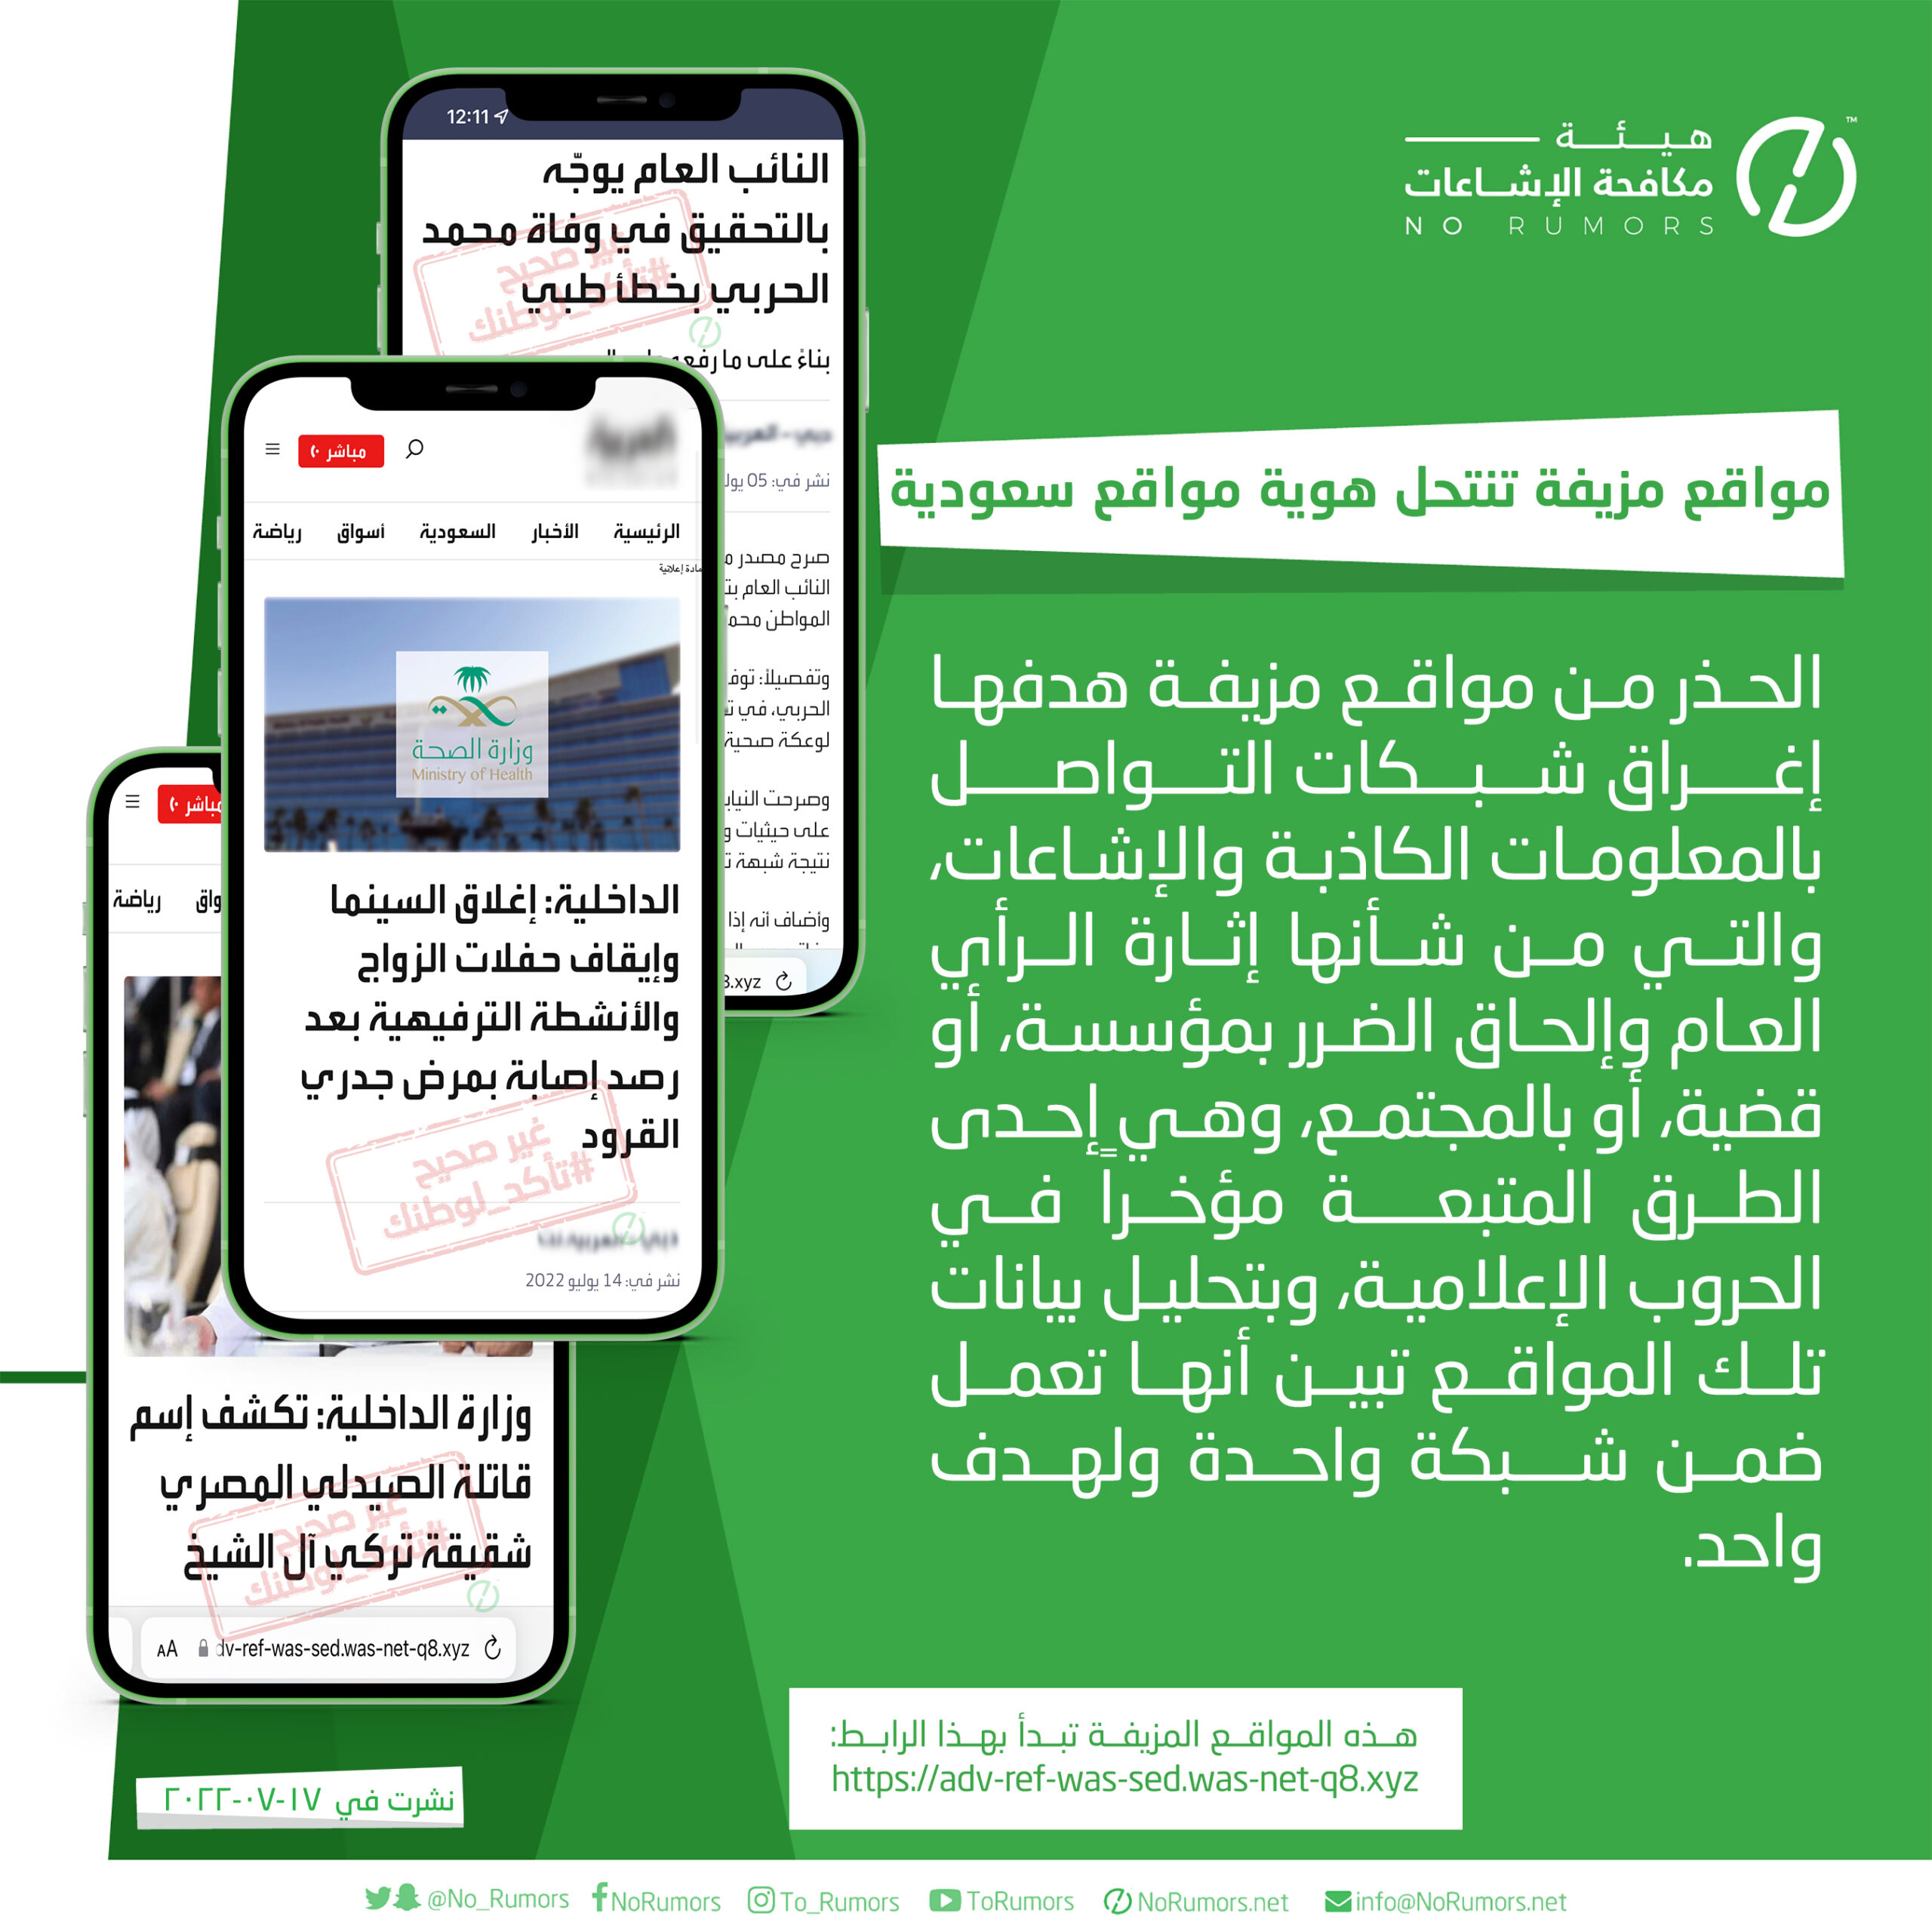 مواقع مزيفة تنتحل هوية مواقع سعودية